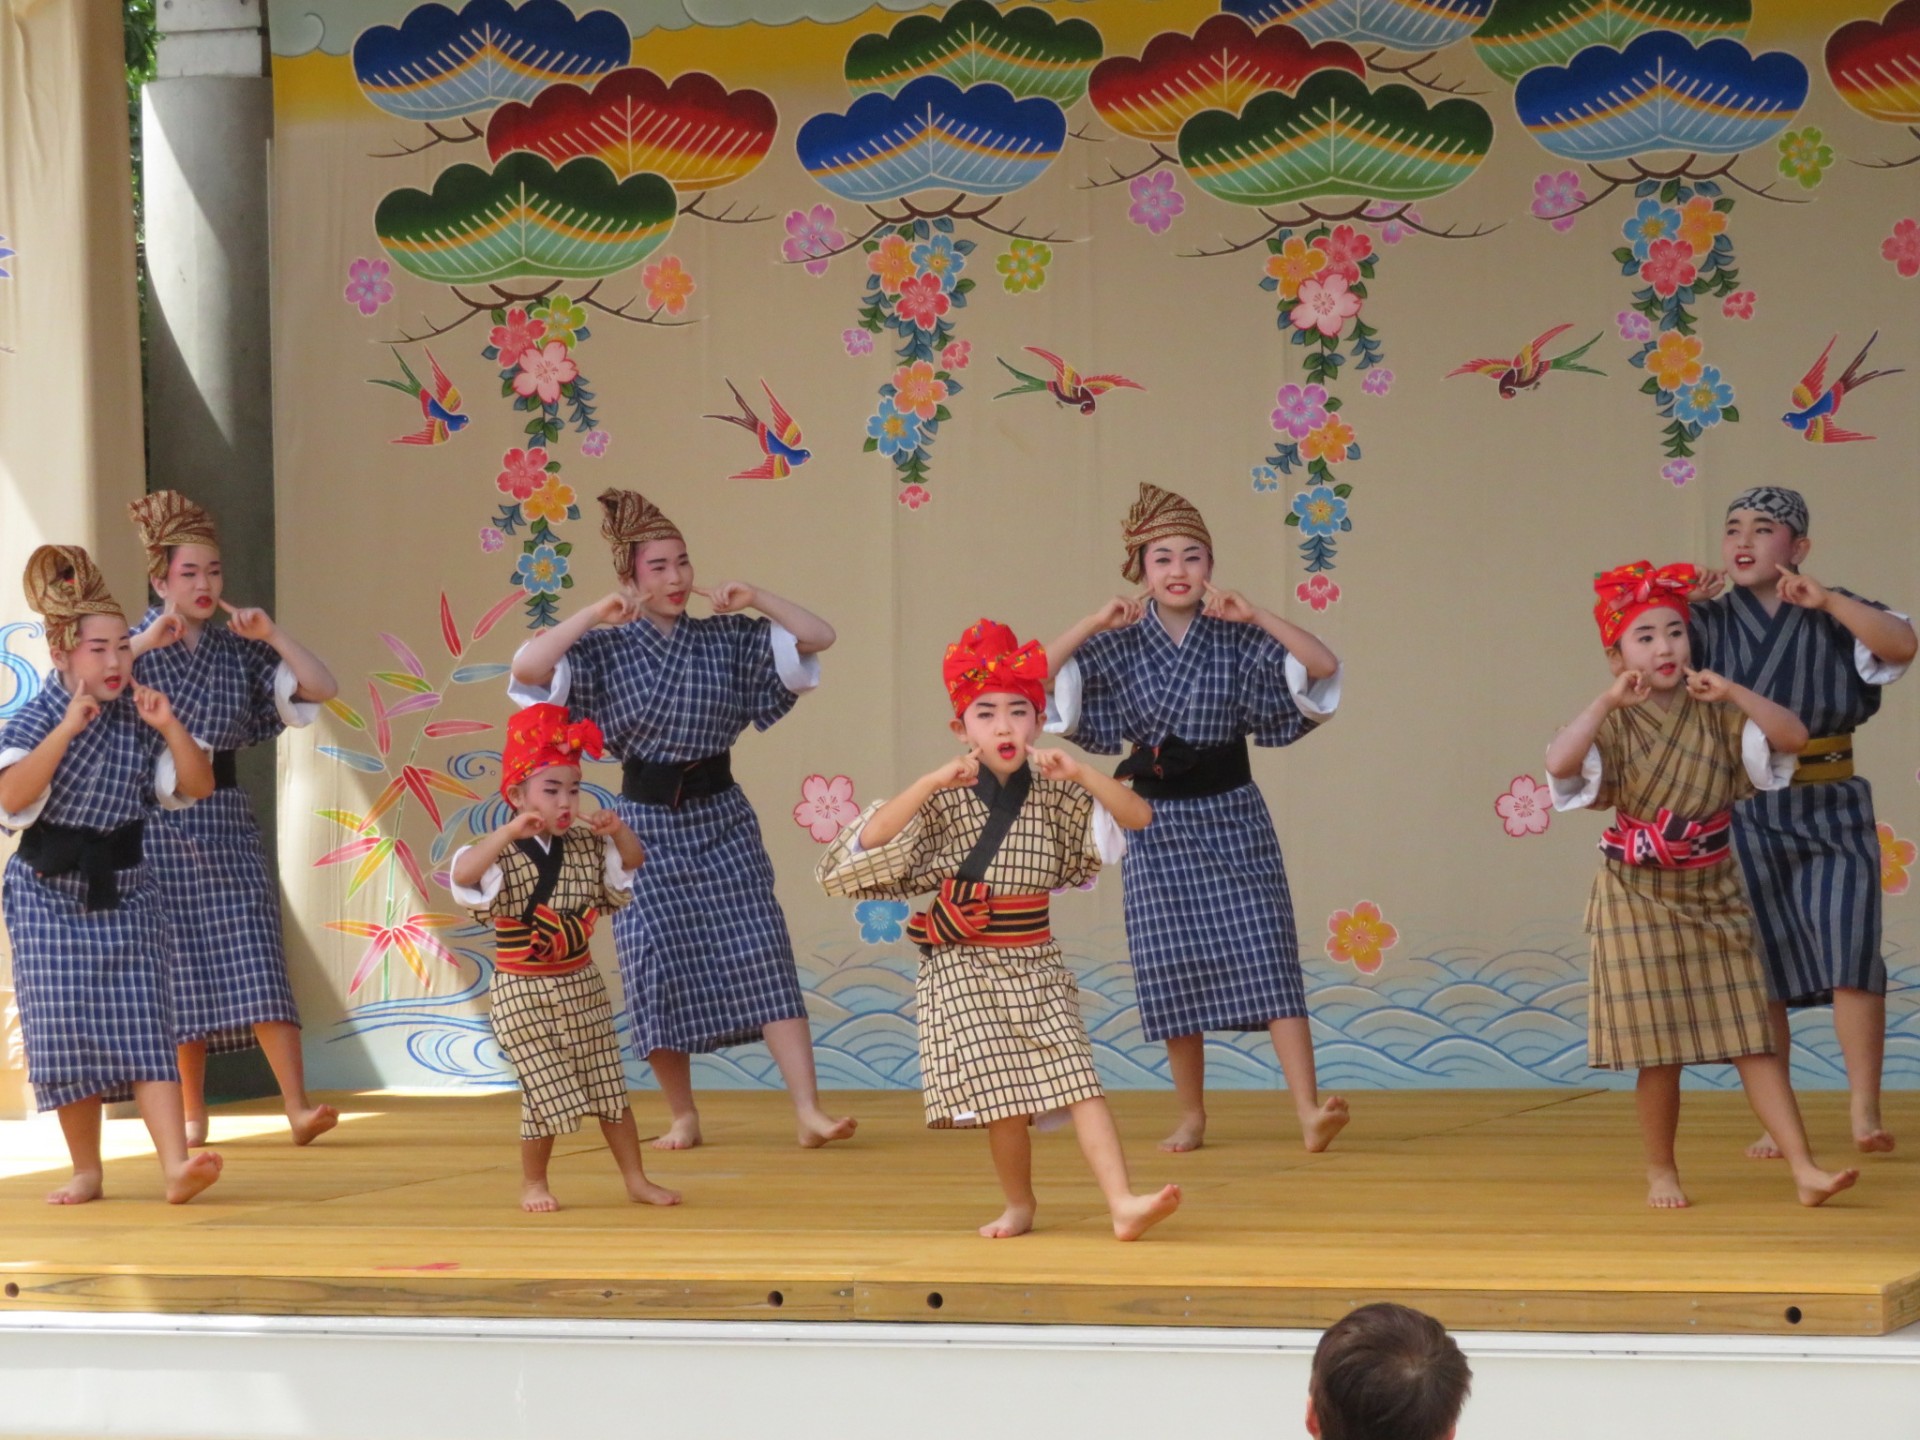 おきなわ郷土村イベント 伝統芸能ステージ「琉球舞踊」 | 海洋博公園 